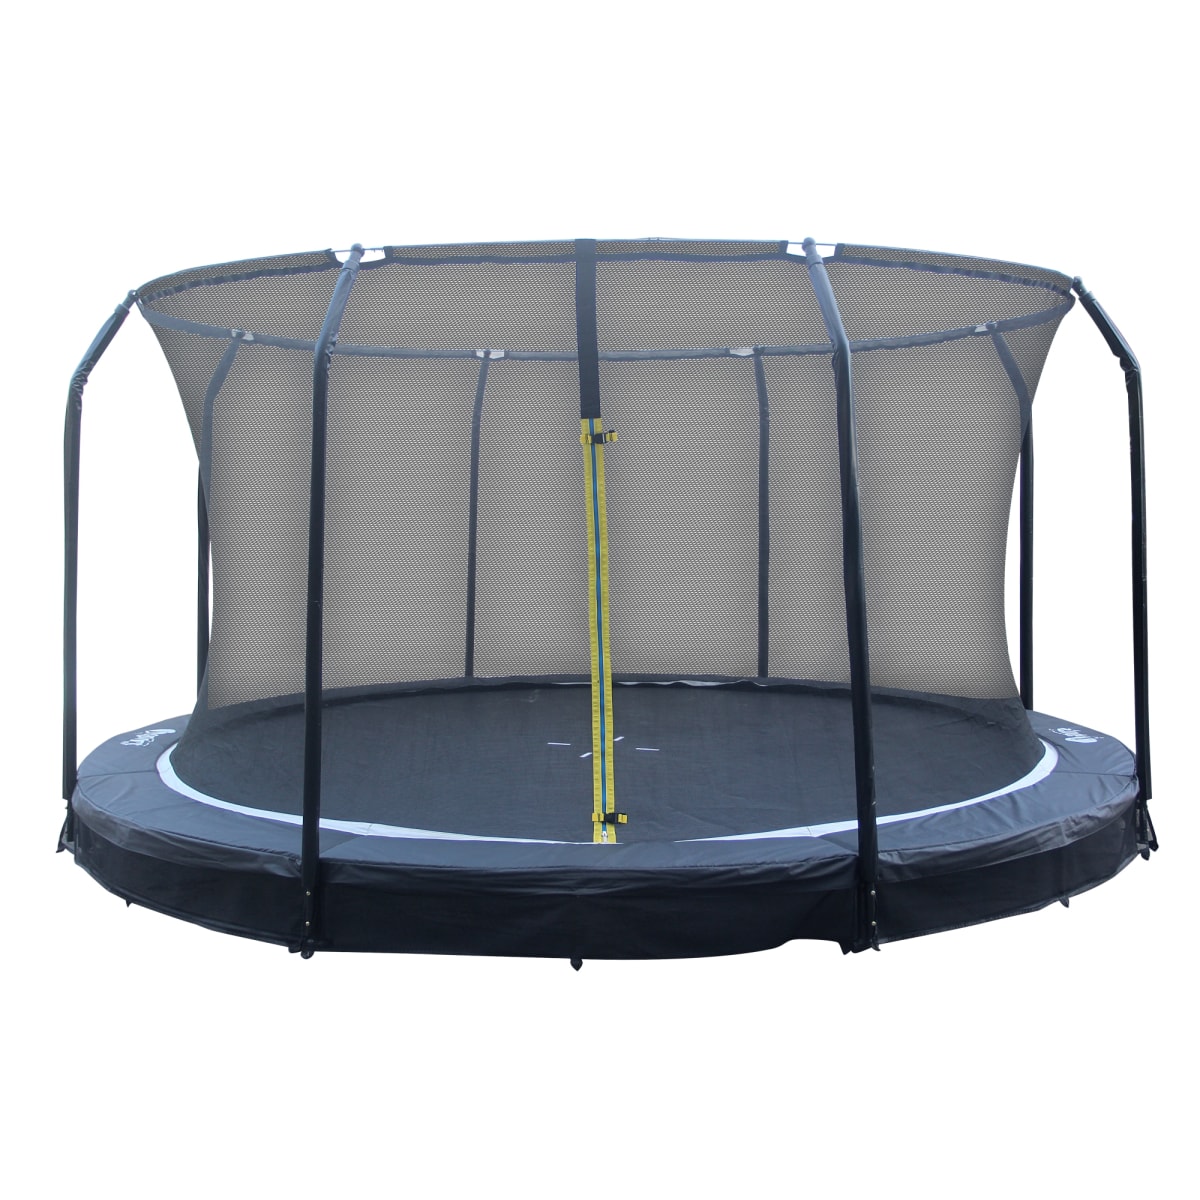 iSport 4,3m 88 jousta matala trampoliini turvaverkolla   verkkokauppa